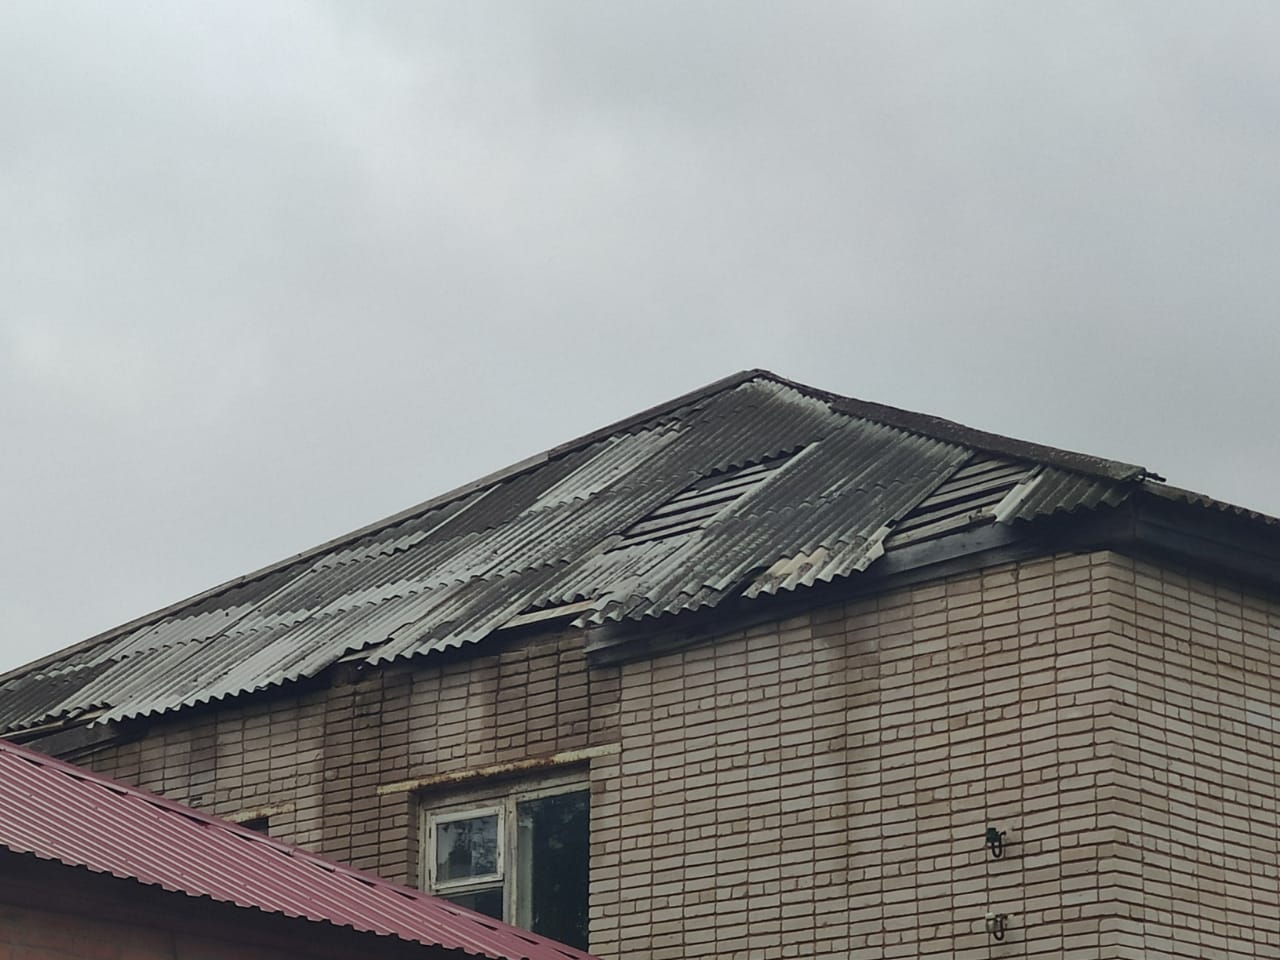 Последствия грозы: крыши трех многоквартирных домов повредило в Можгинском районе